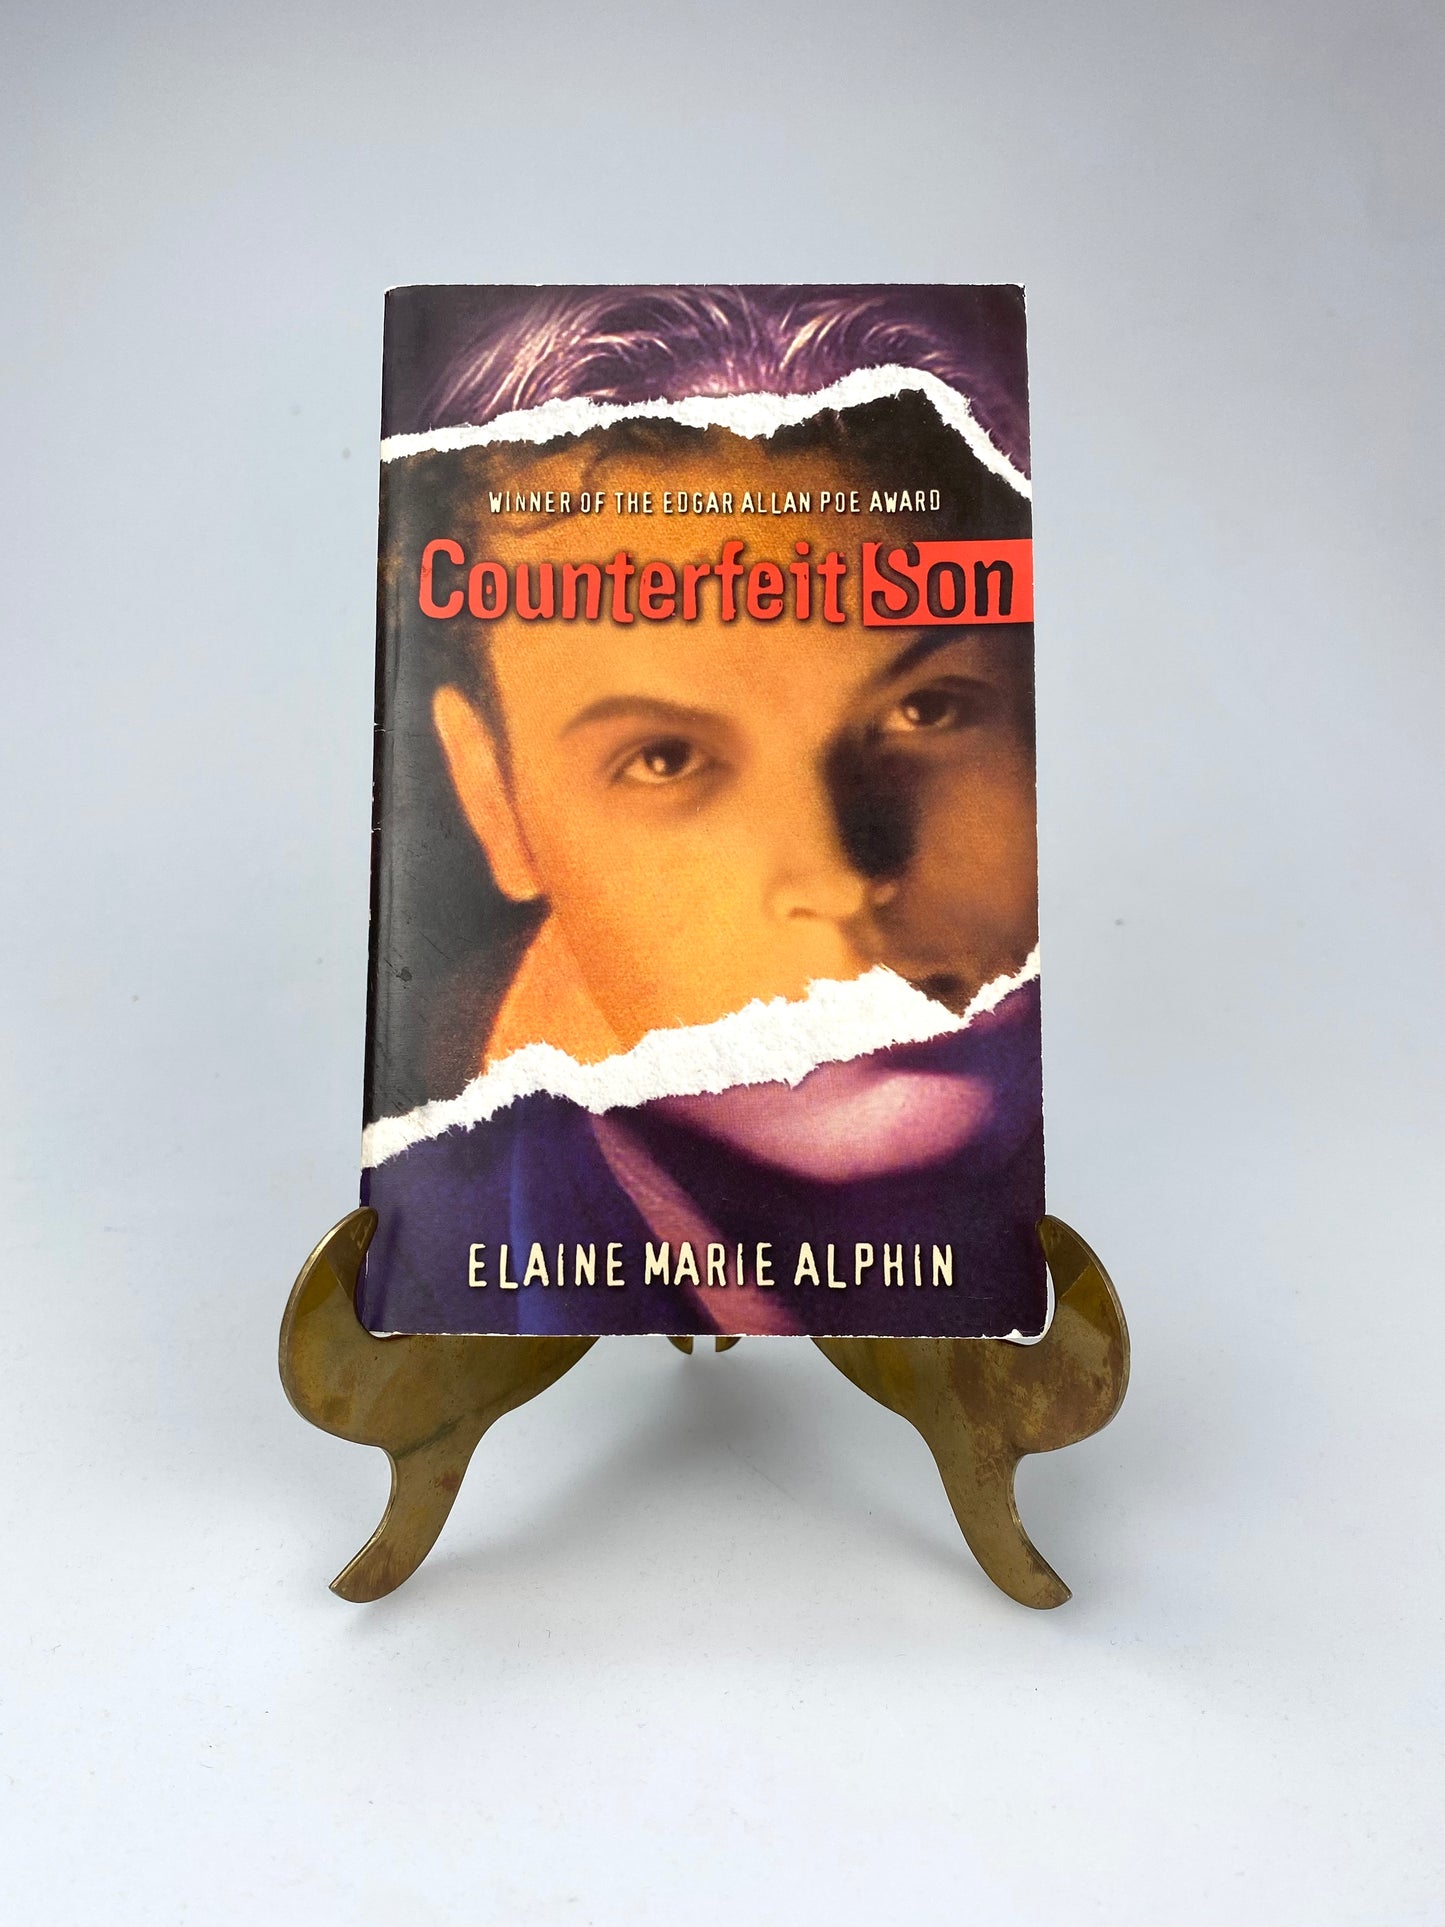 Counterfeit Son by Elaine Marie Alphin